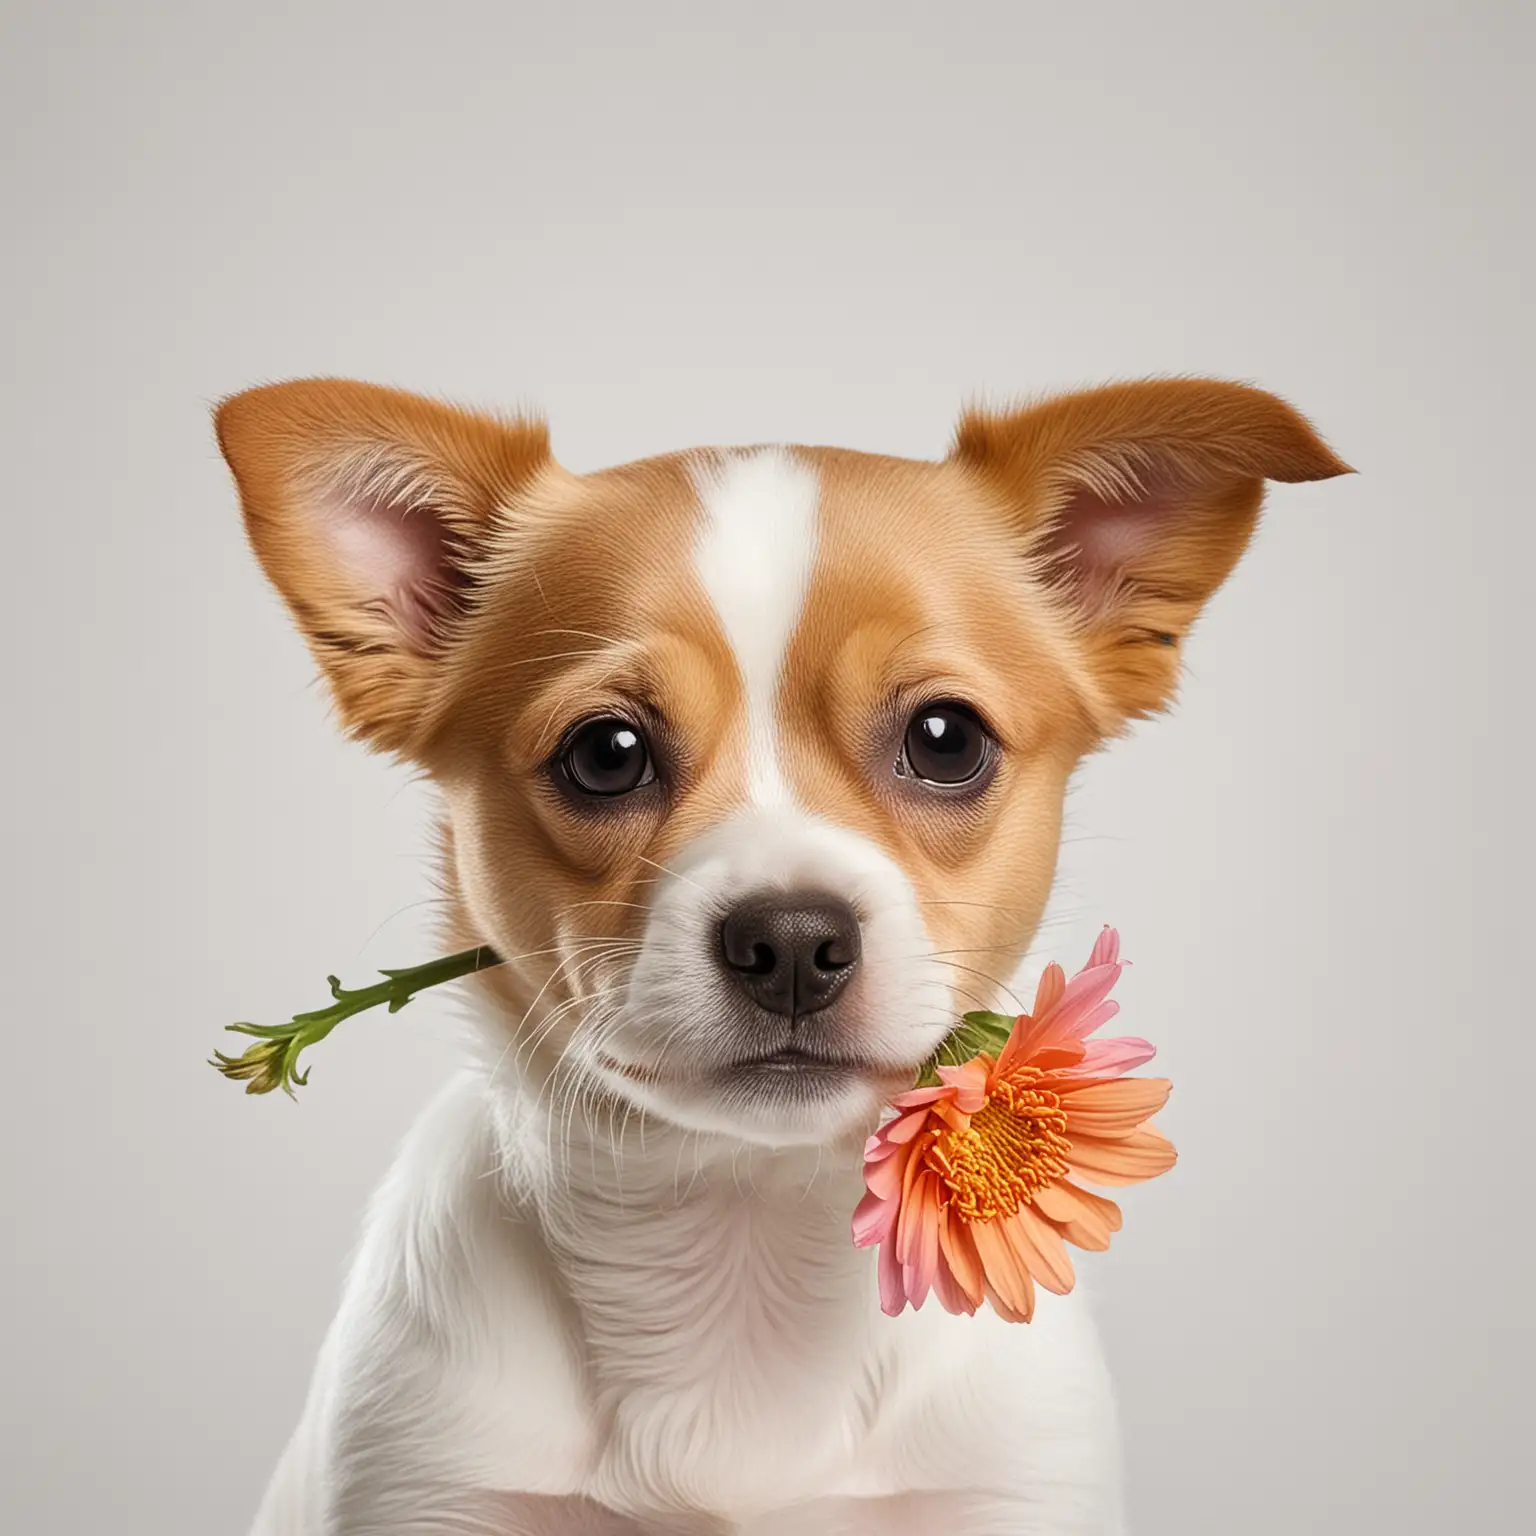 Un perrito con una flor en el hocico con un fondo blanco